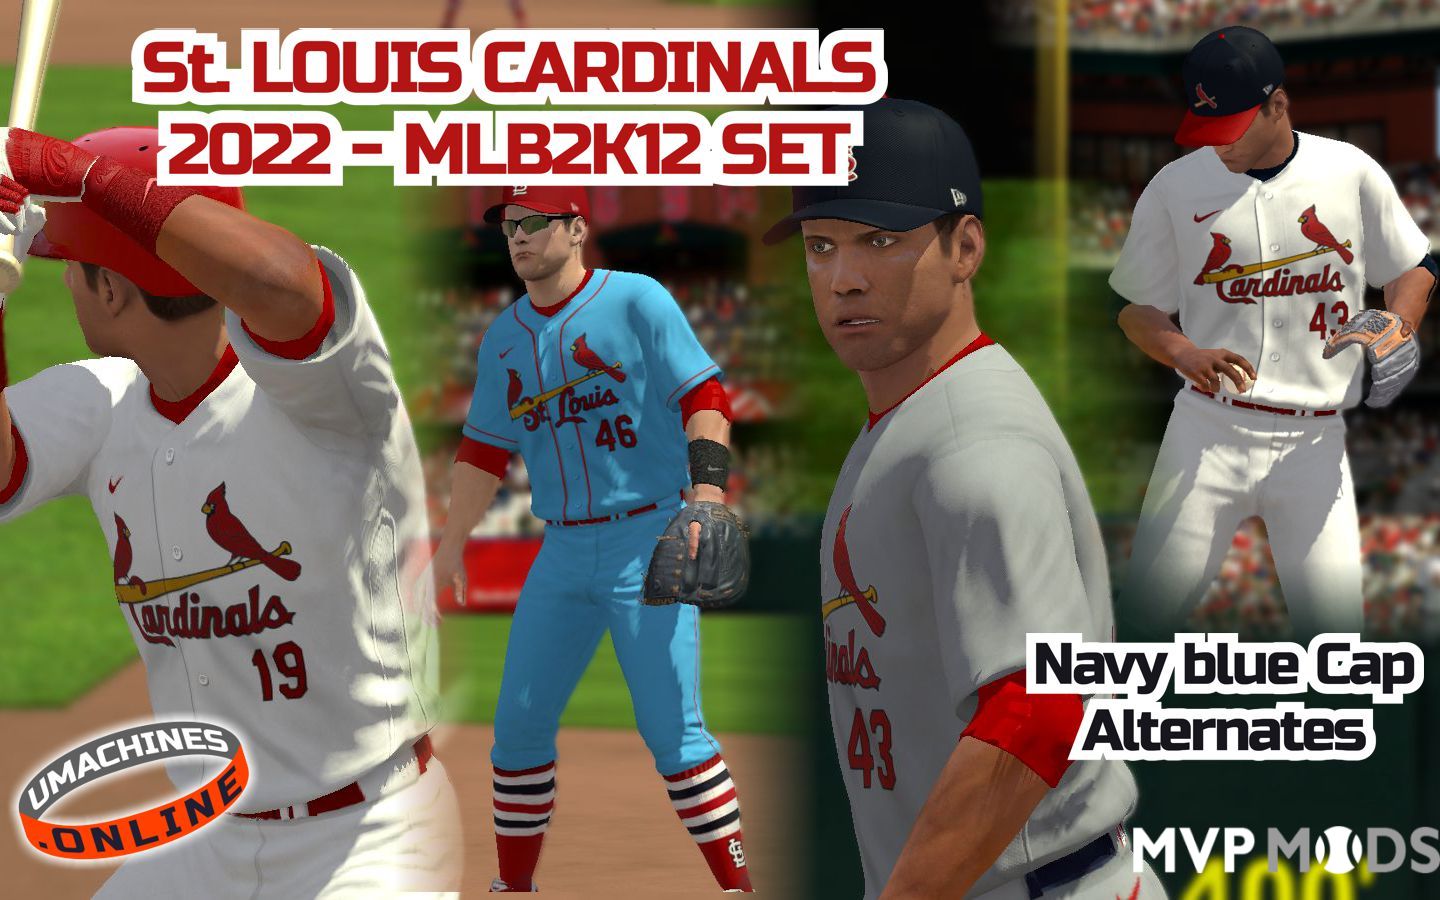 cardinals uniforms baseball